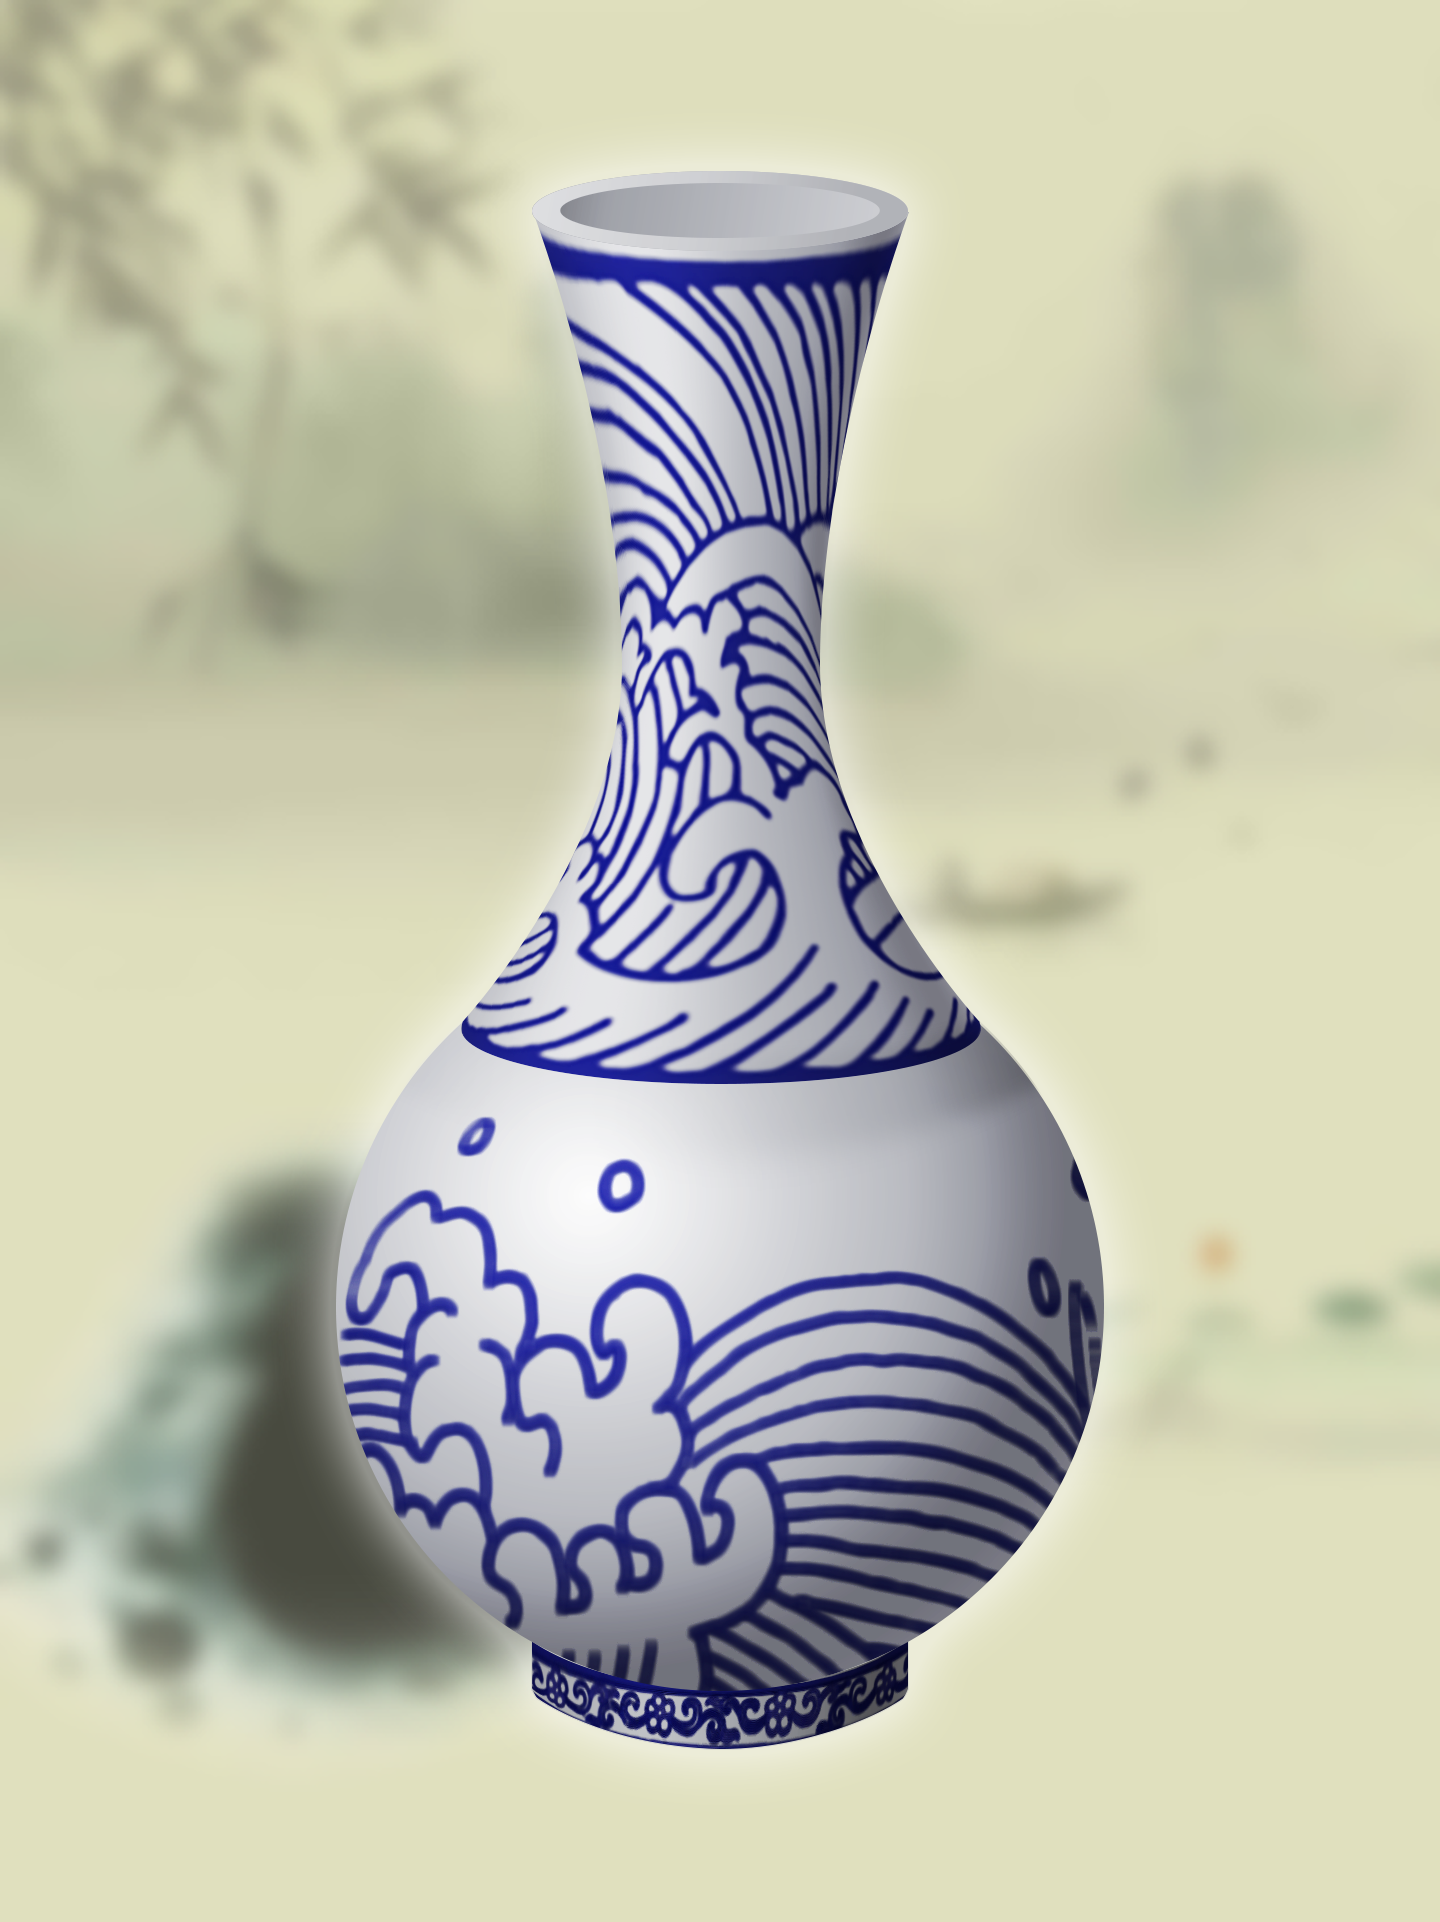 花瓶水彩画 花瓶水彩画图案简单又漂亮 - 水彩迷